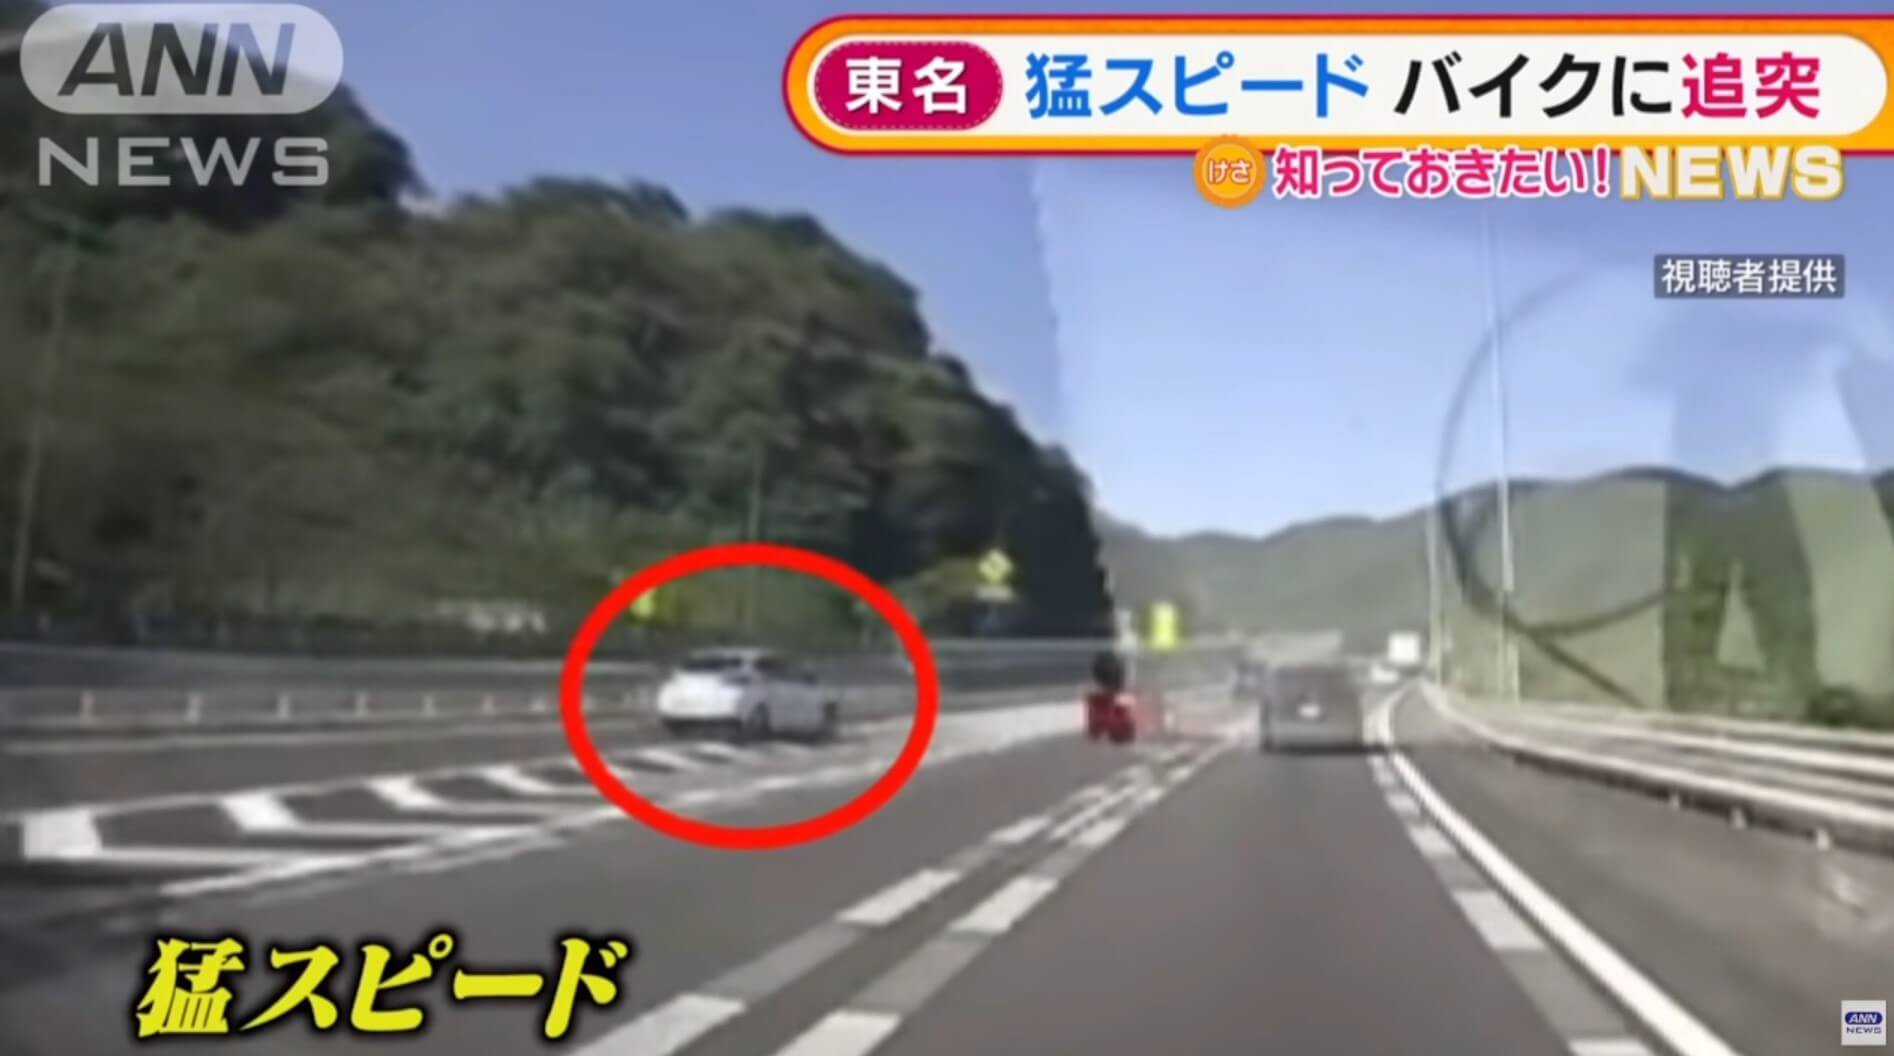 Carro em alta velocidade derruba motociclista em via expressa do Japão